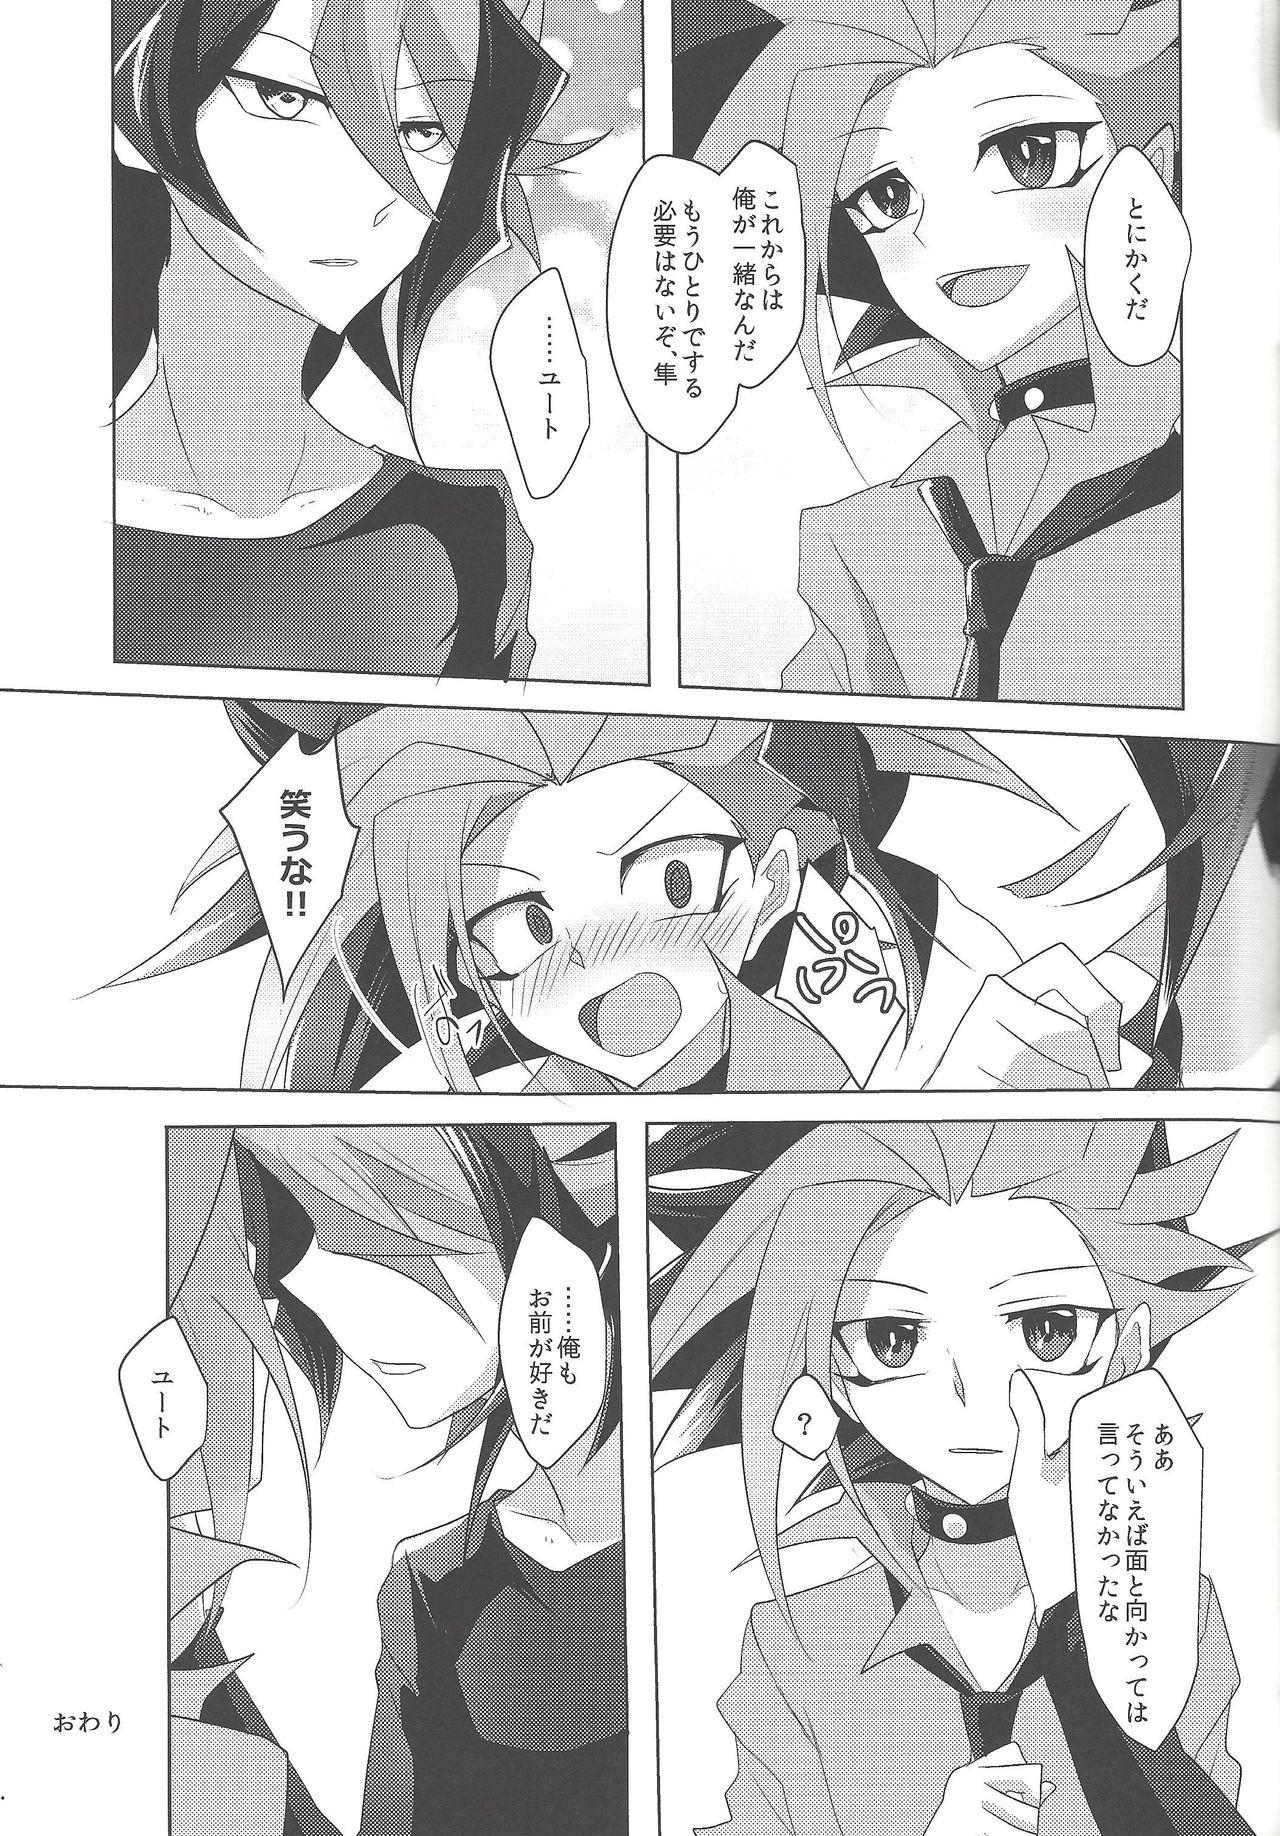 Uncensored Kimi to kokoro no risōkyō - Yu-gi-oh arc-v POV - Page 28